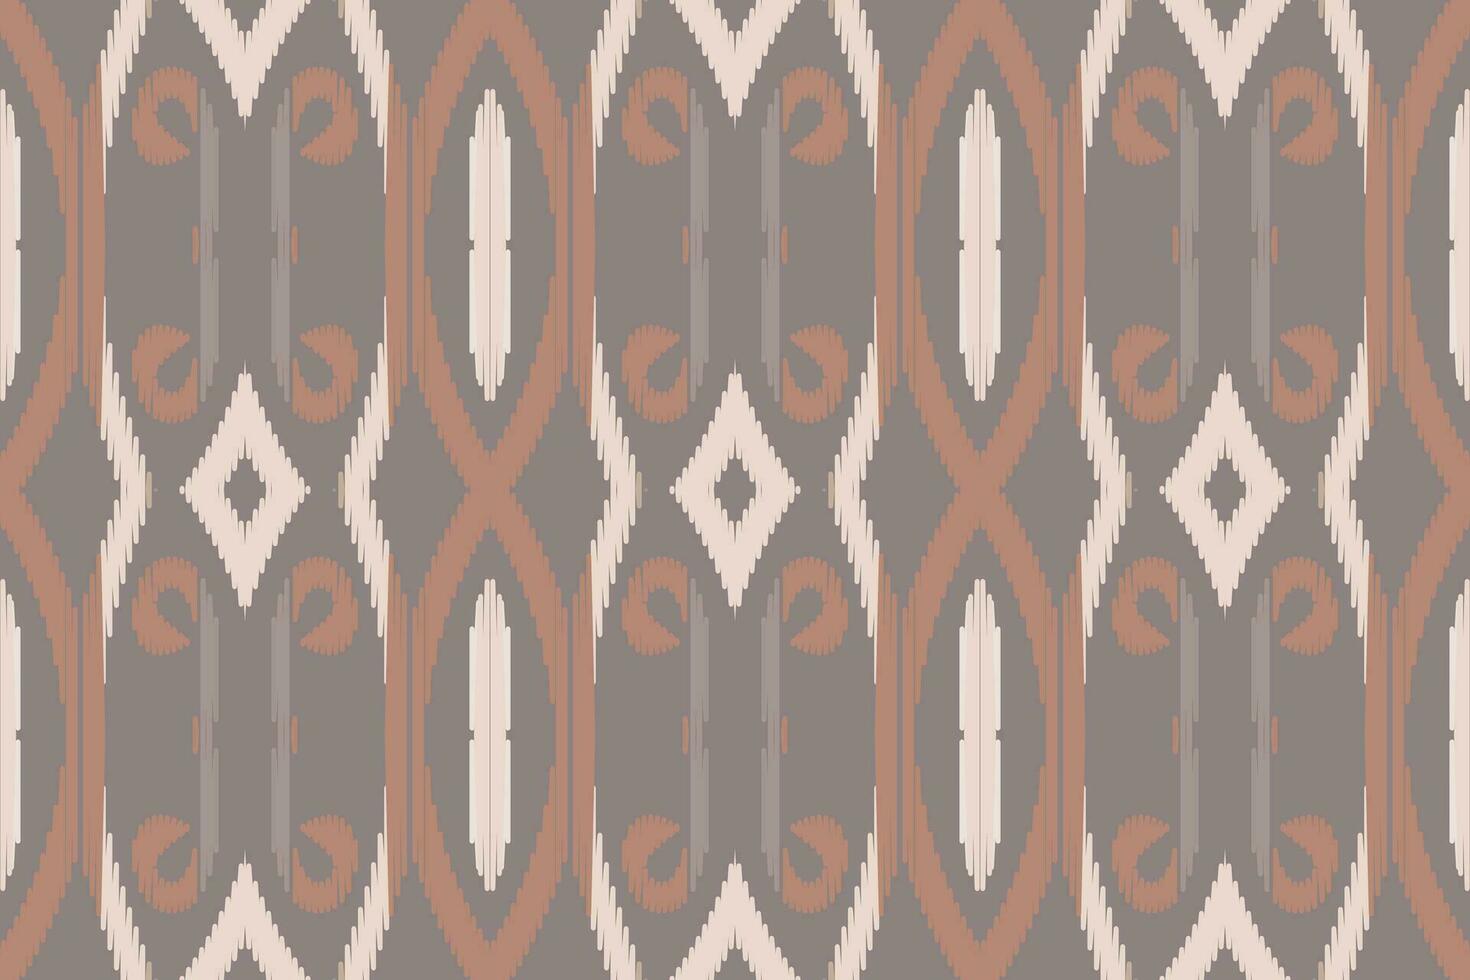 motiv ikat sömlös mönster broderi bakgrund. ikat damast- geometrisk etnisk orientalisk mönster traditionell.aztec stil abstrakt vektor design för textur, tyg, kläder, inslagning, sarong.